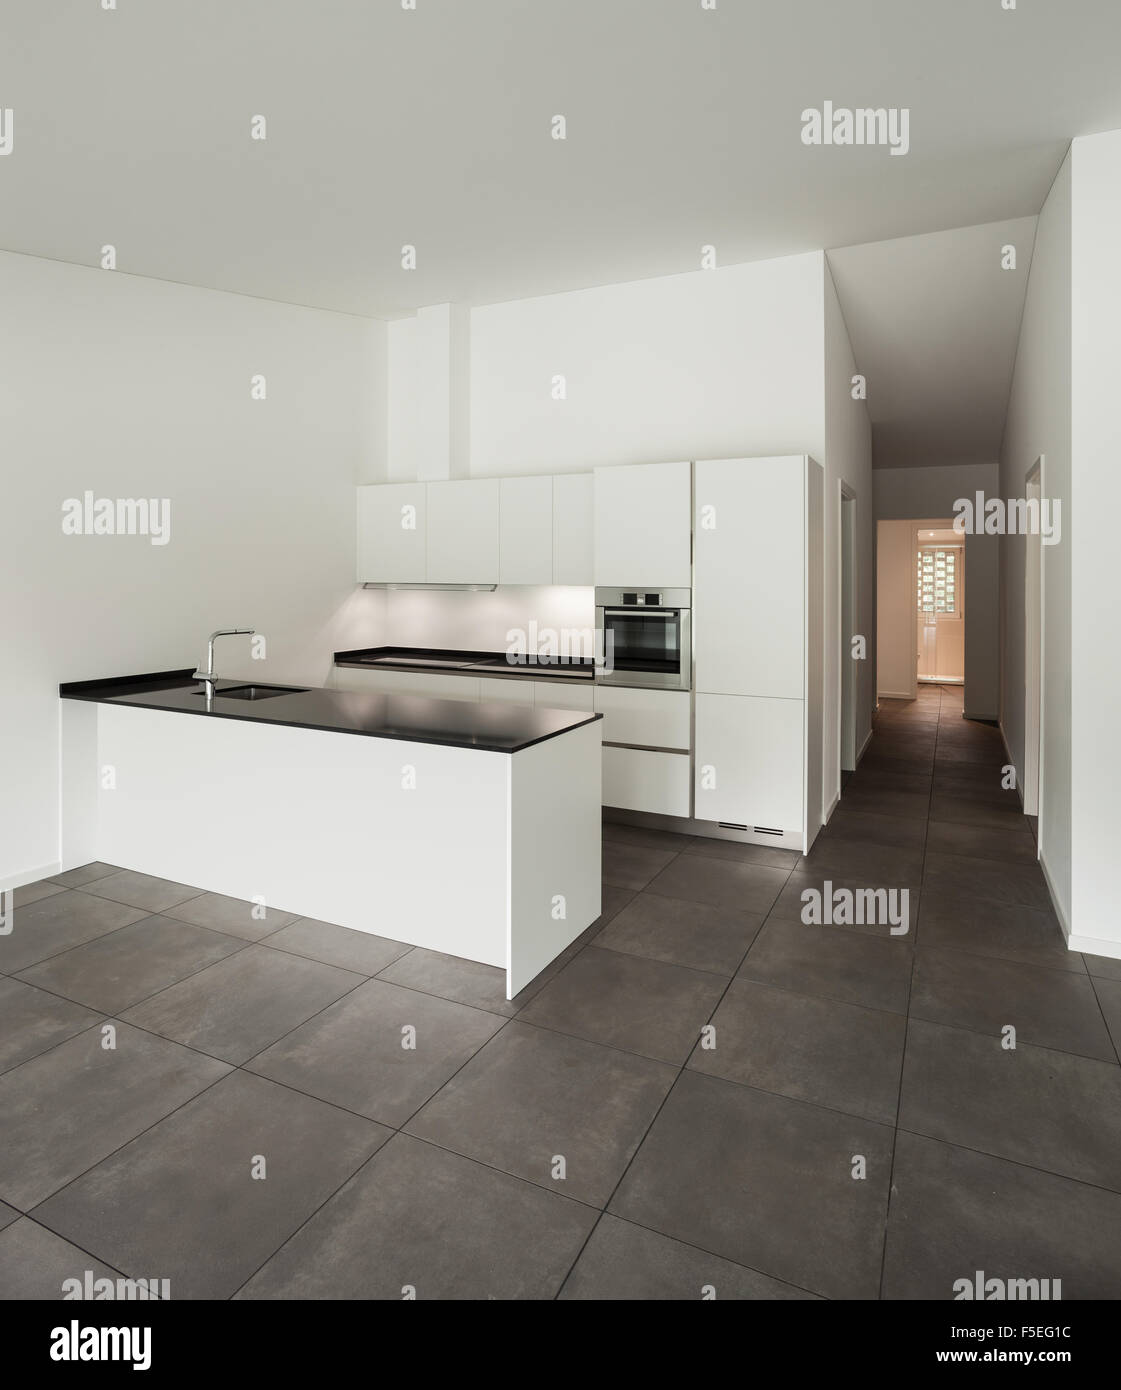 interior of new apartment, white domestic kitchen Stock Photo